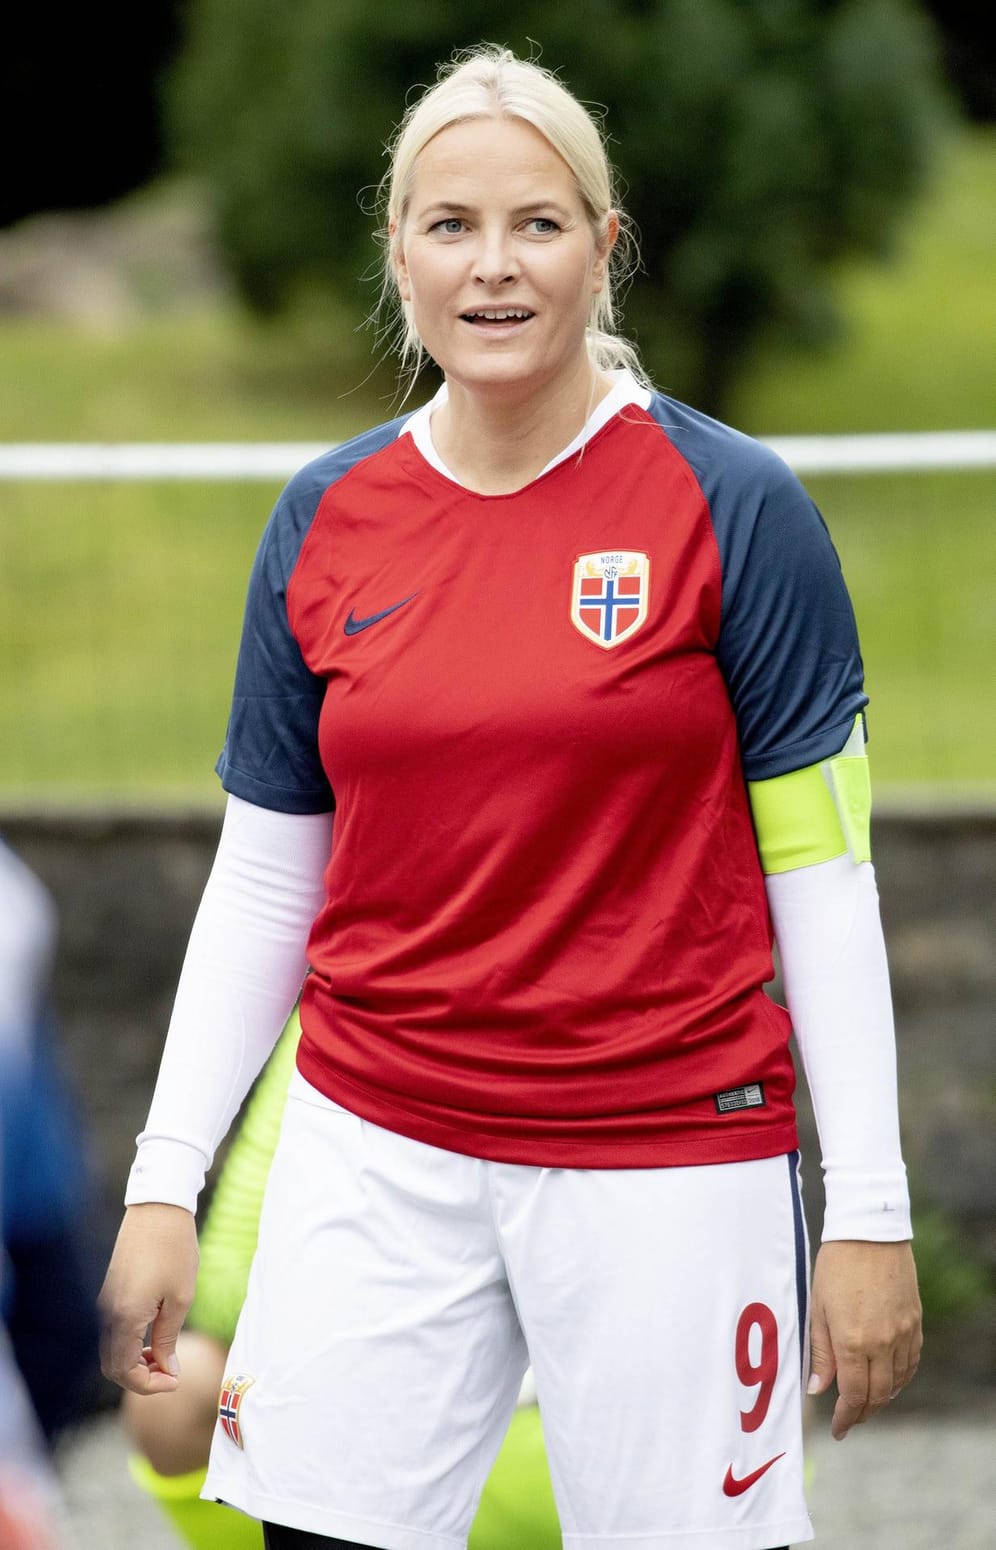 Sportlich unterwegs: Norwegens Kronprinzessin macht auch im Fußball-Outfit eine gute Figur.